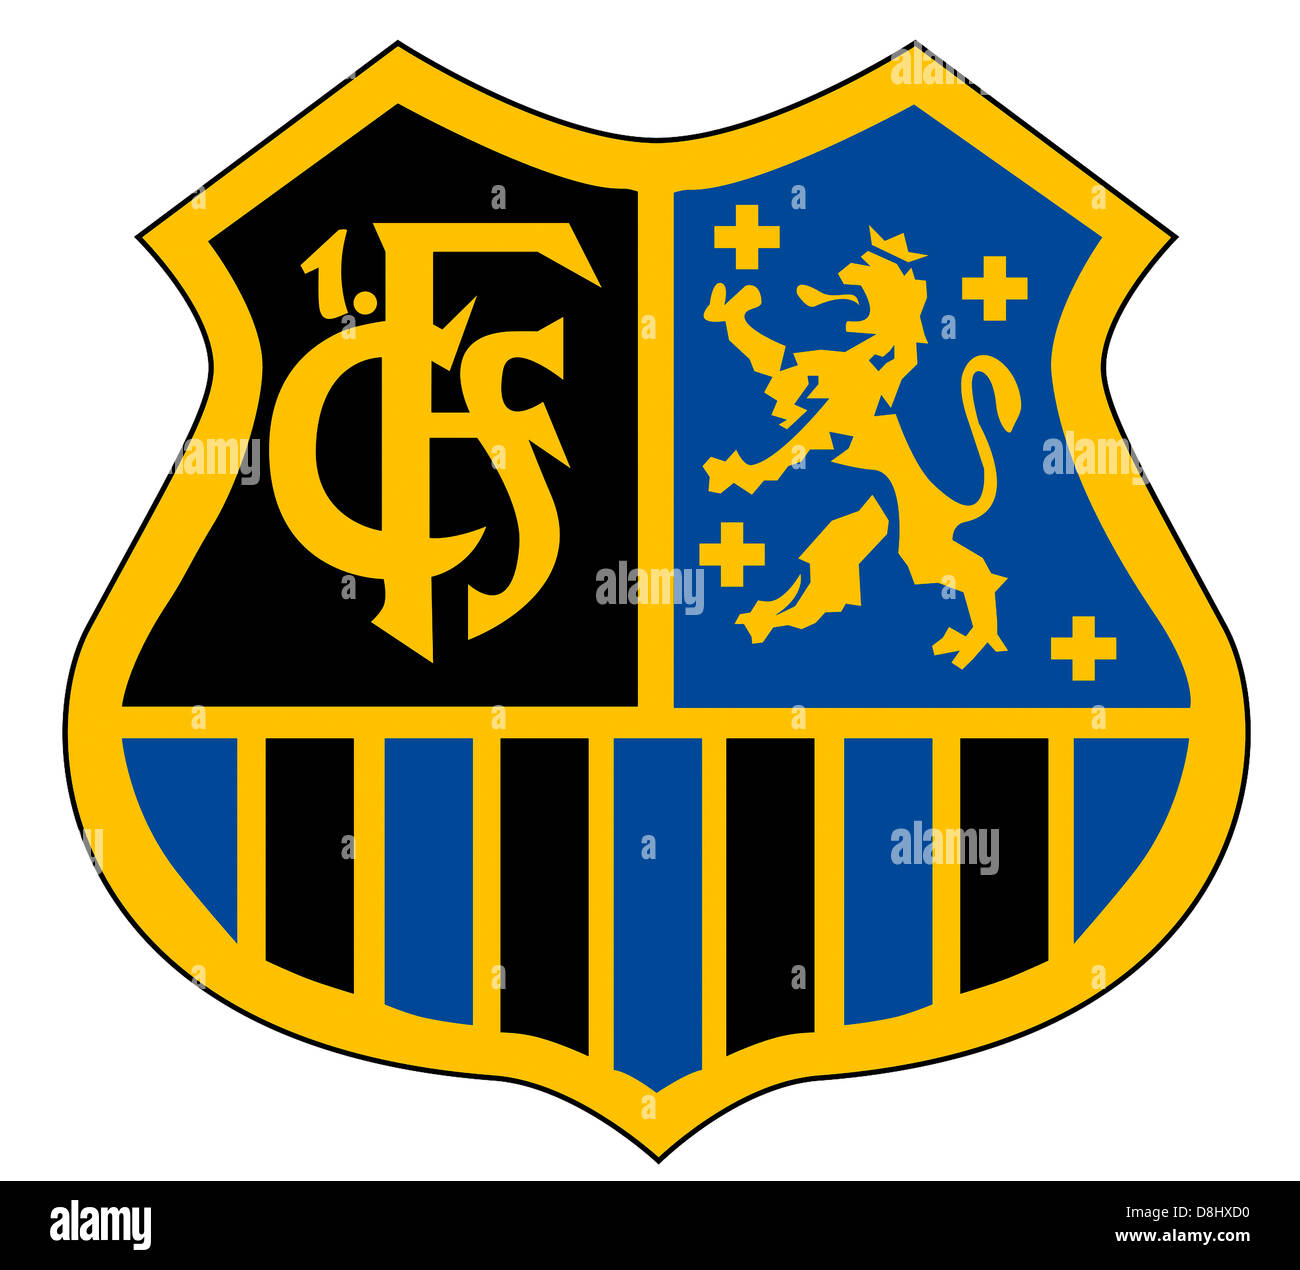 Il logo della squadra di calcio tedesca team 1FC Saarbruecken Foto stock -  Alamy